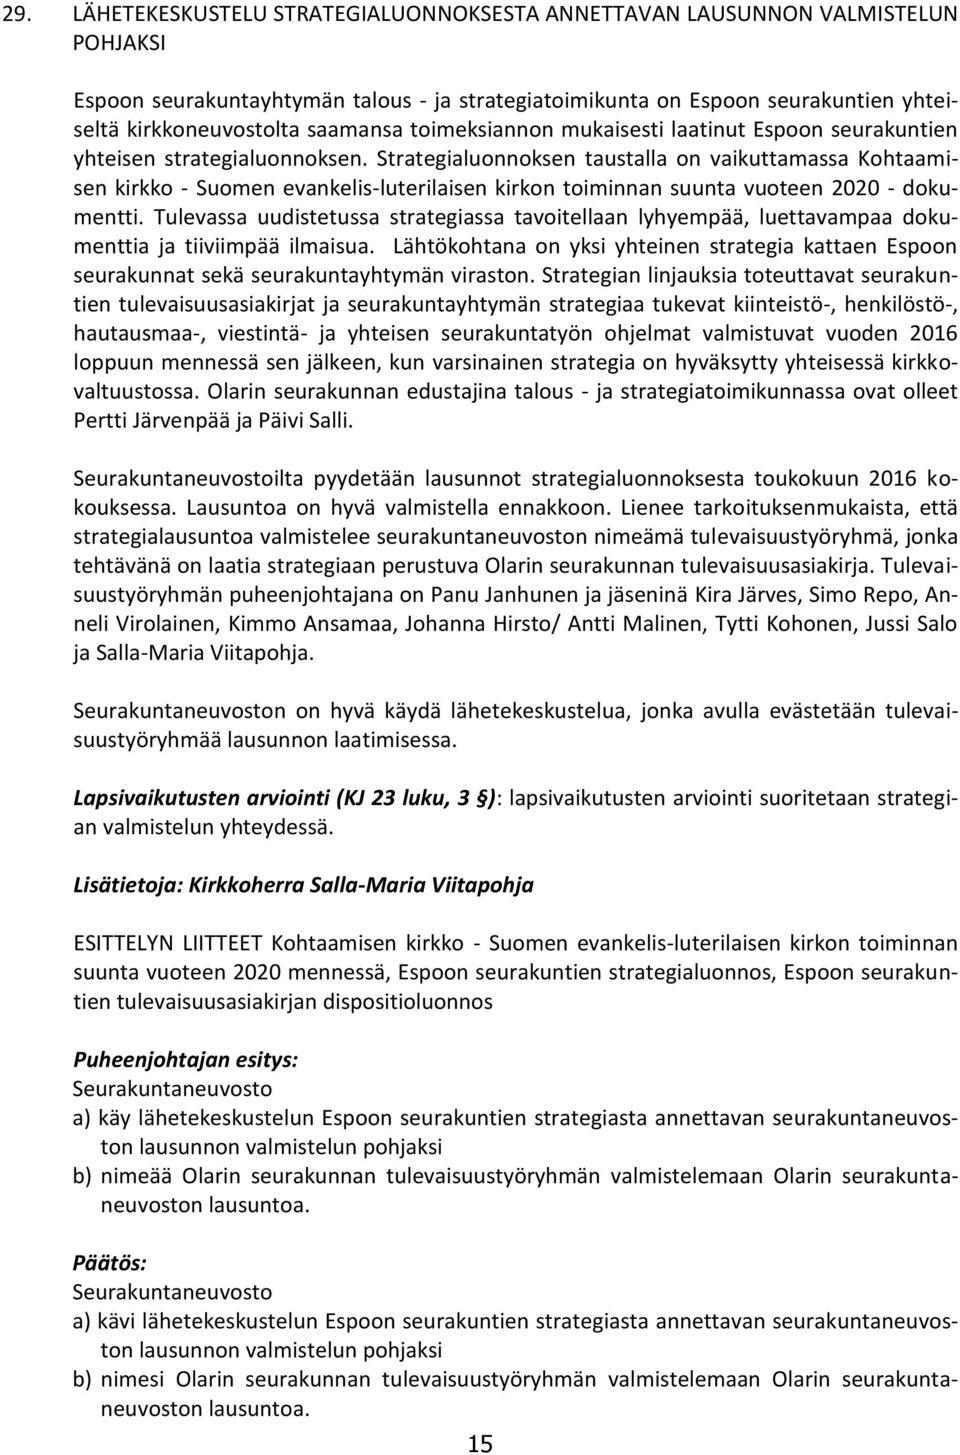 Strategialuonnoksen taustalla on vaikuttamassa Kohtaamisen kirkko - Suomen evankelis-luterilaisen kirkon toiminnan suunta vuoteen 2020 - dokumentti.